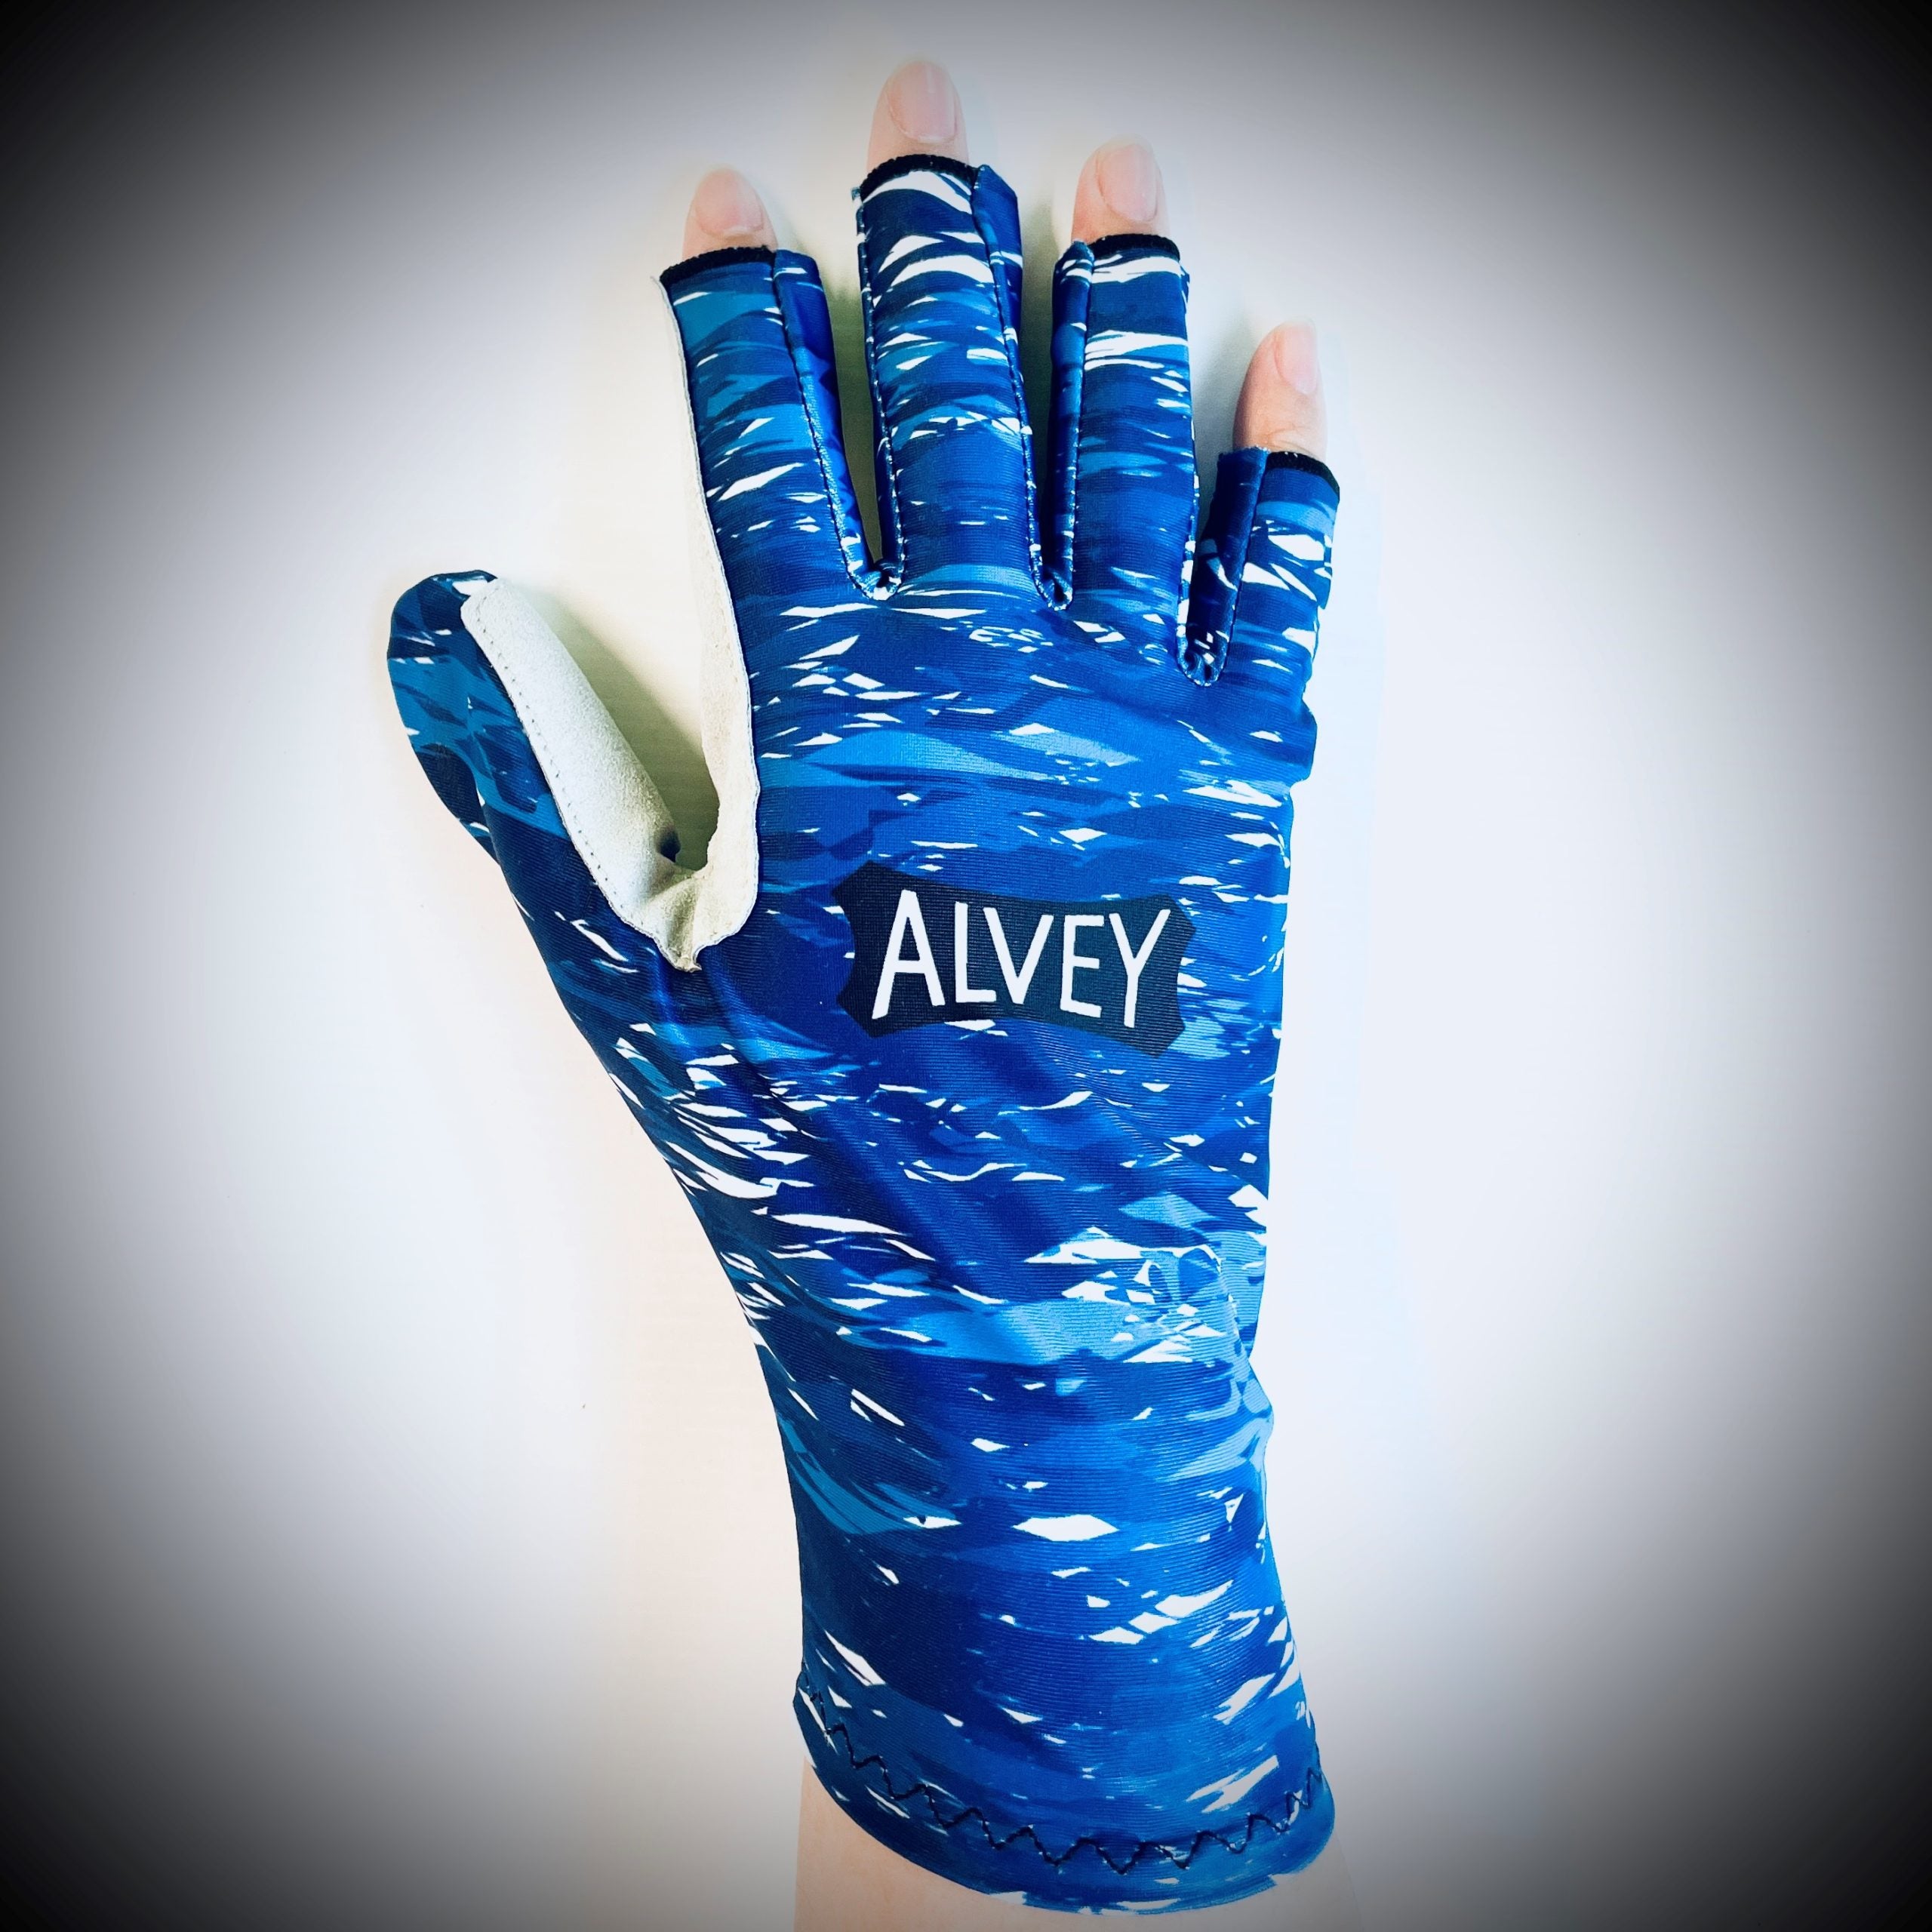 Alvey Fishing Gloves - Alvey Australia